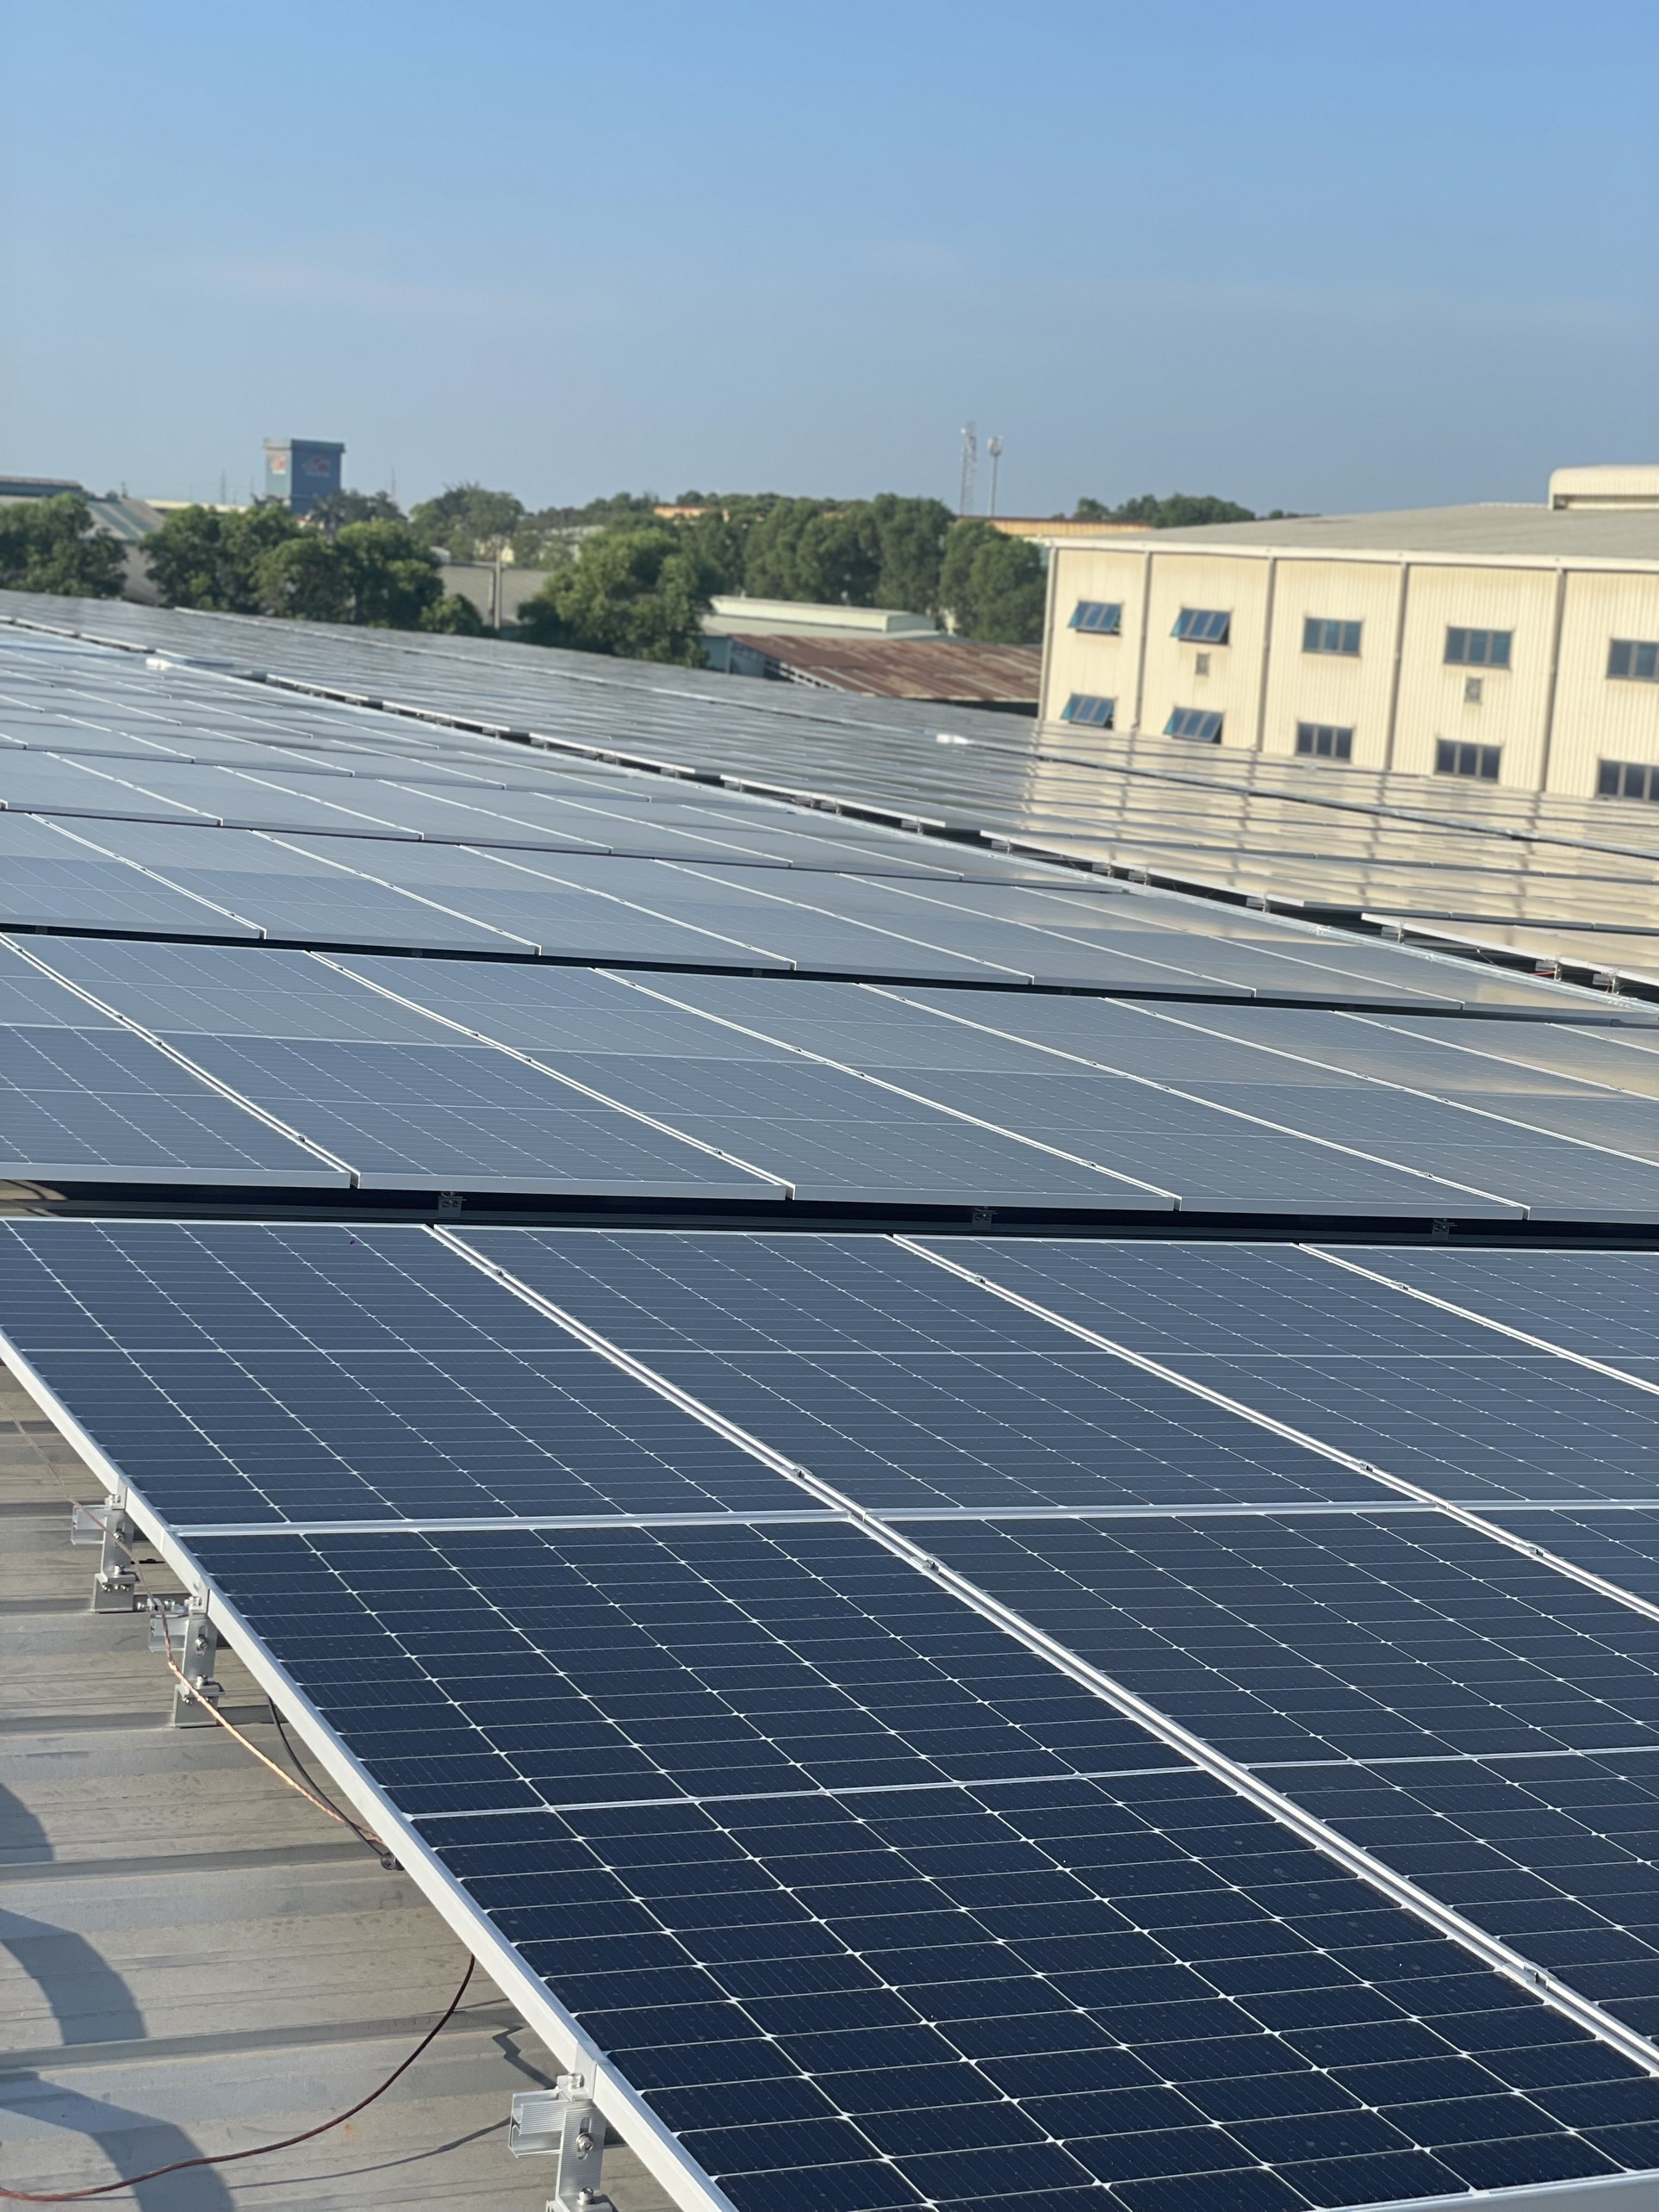 Nhiều doanh nghiệp đã đầu điện mặt trời trên các mái nhà để tiết kiệm năng lượng. Ảnh: Khắc Kiên